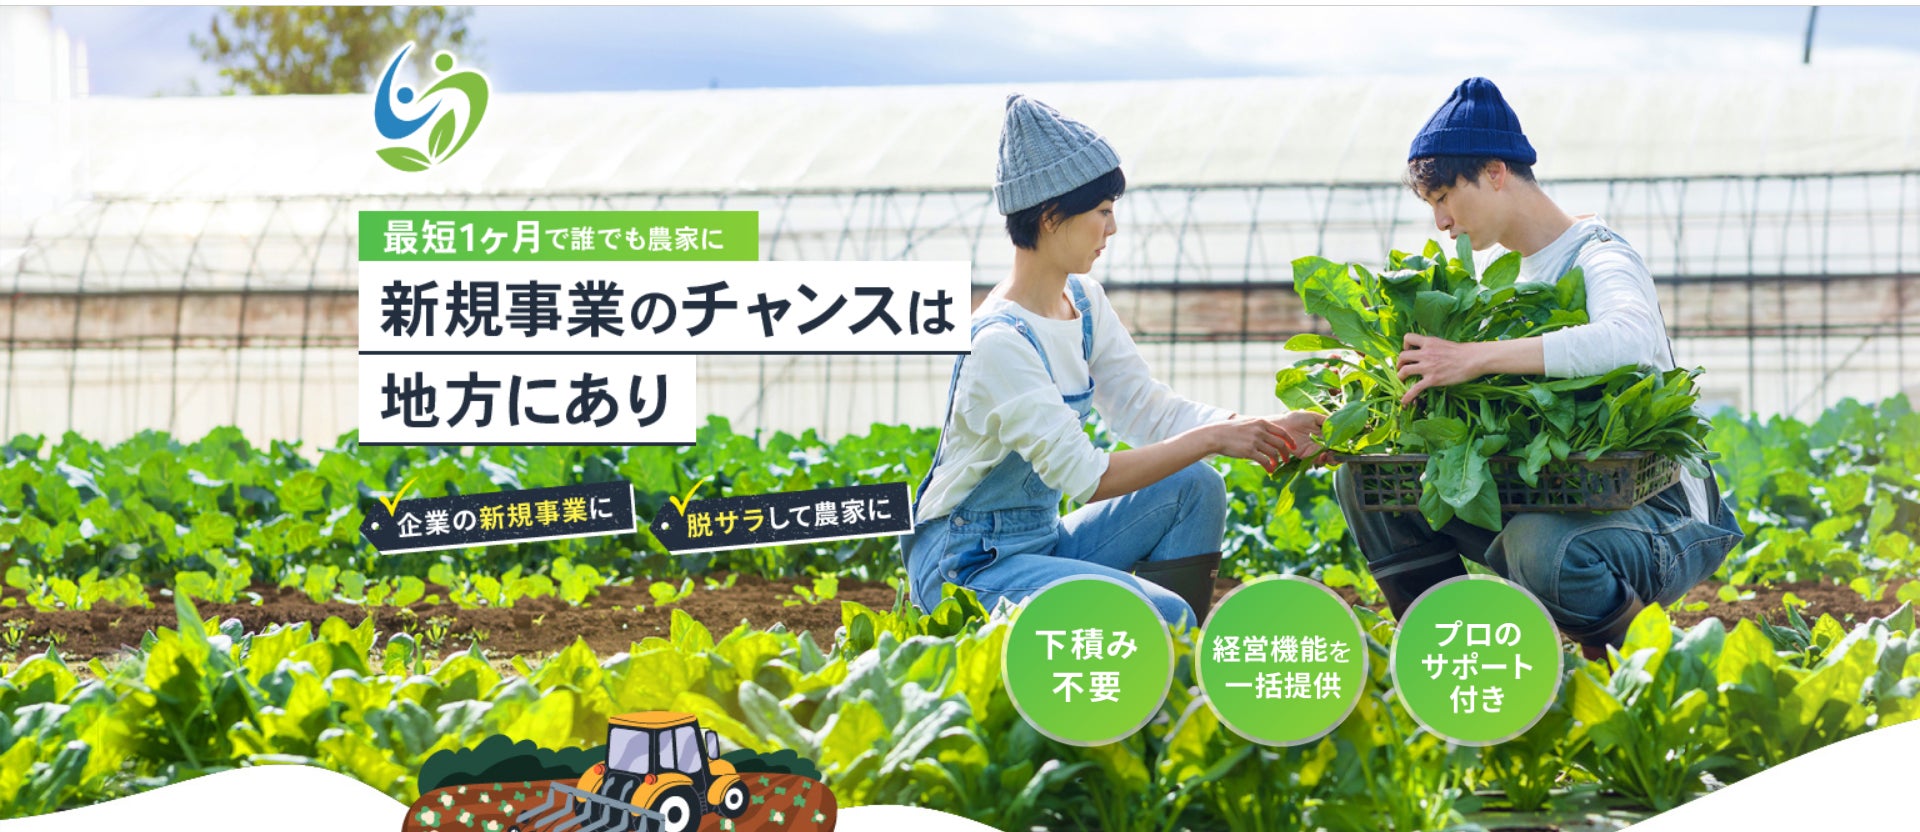 農業フランチャイズモデル「Cool Connect」1ヶ月で6件のFC農家誕生！9月から埼玉県でサービス開始のサブ画像1